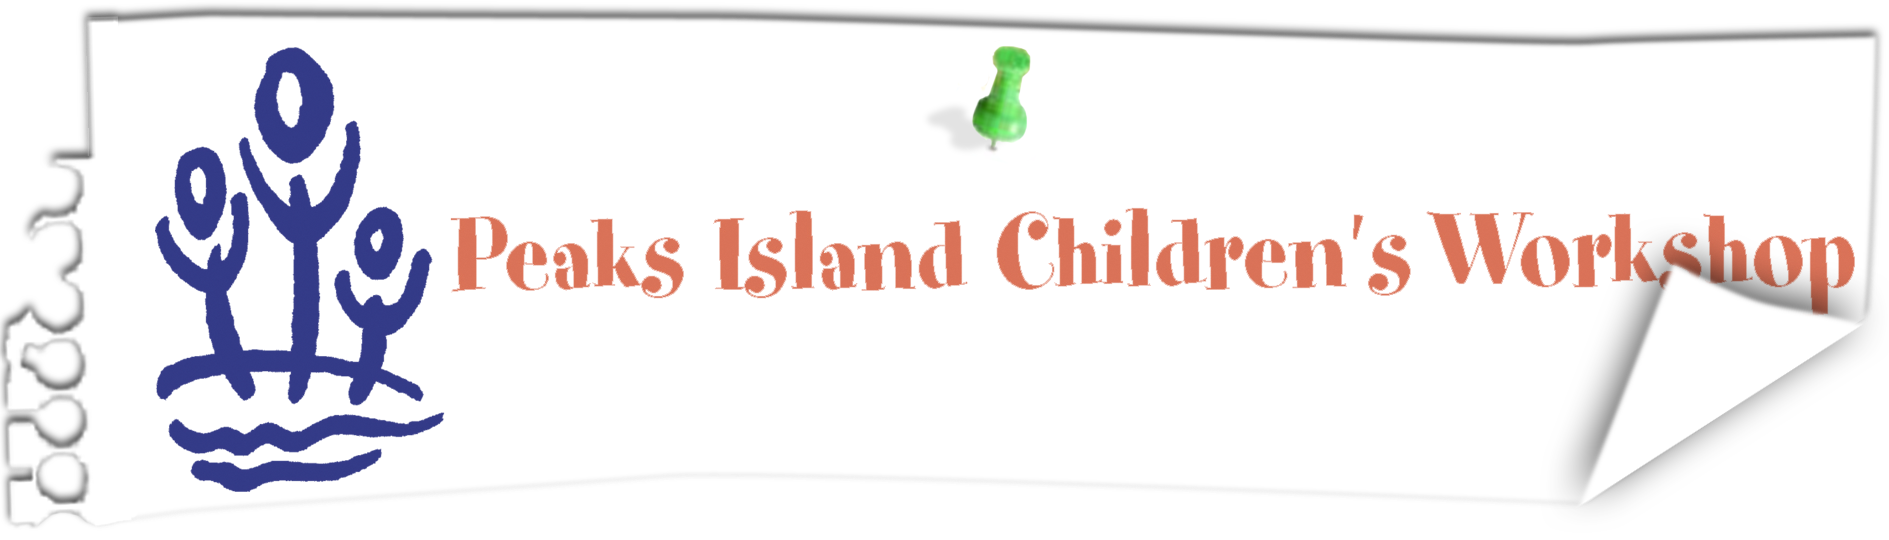 PEAKS ISLAND CHILDRENS WORKSHOP